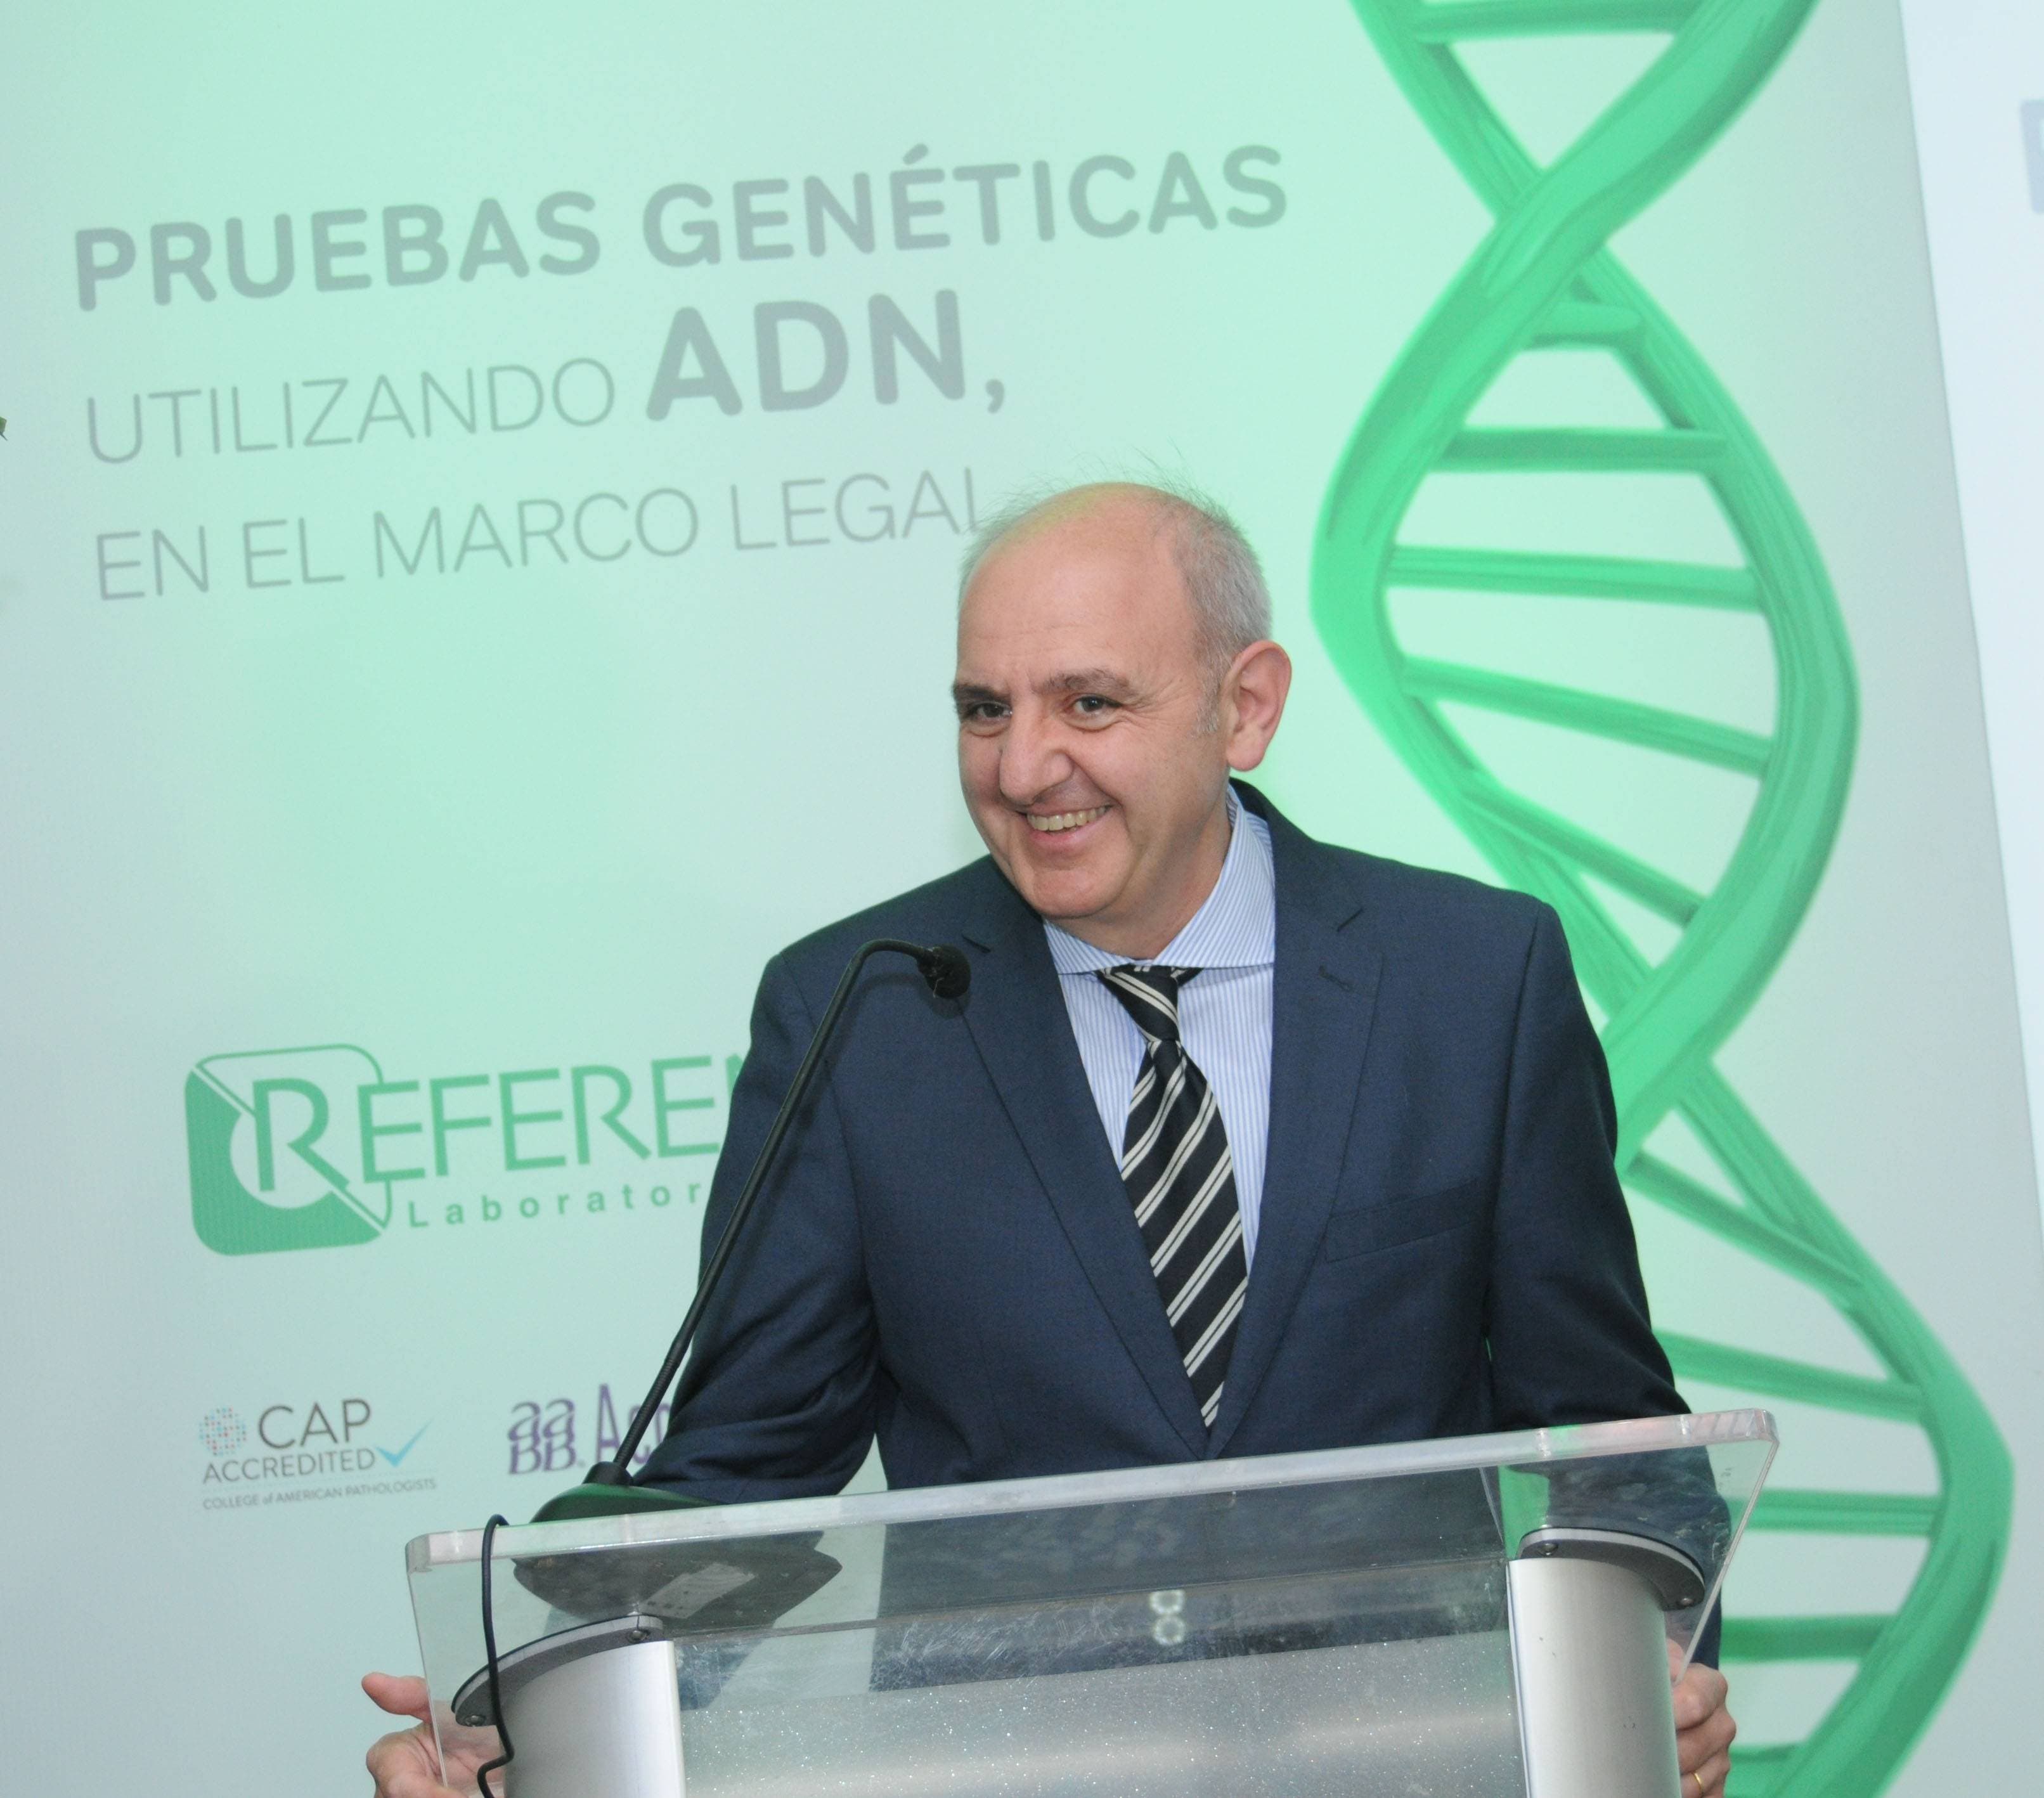 Video: Científico propone a RD analítica del ADN como método investigación delictiva